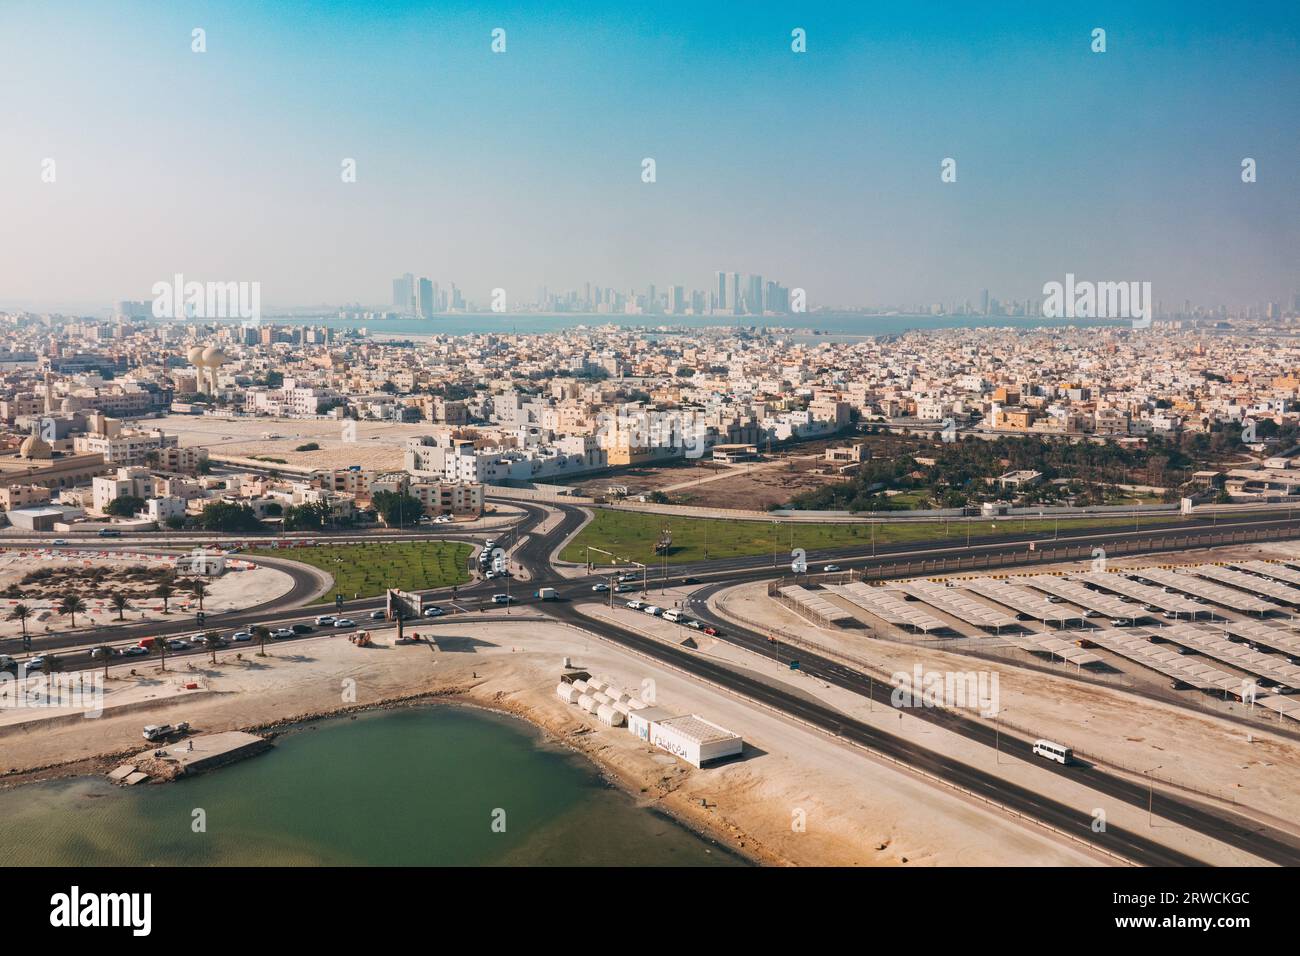 Une vue aérienne de la ville de Muharraq, près de l'aéroport international de Bahreïn. La ville de Manama peut être vue au loin à travers la baie Banque D'Images